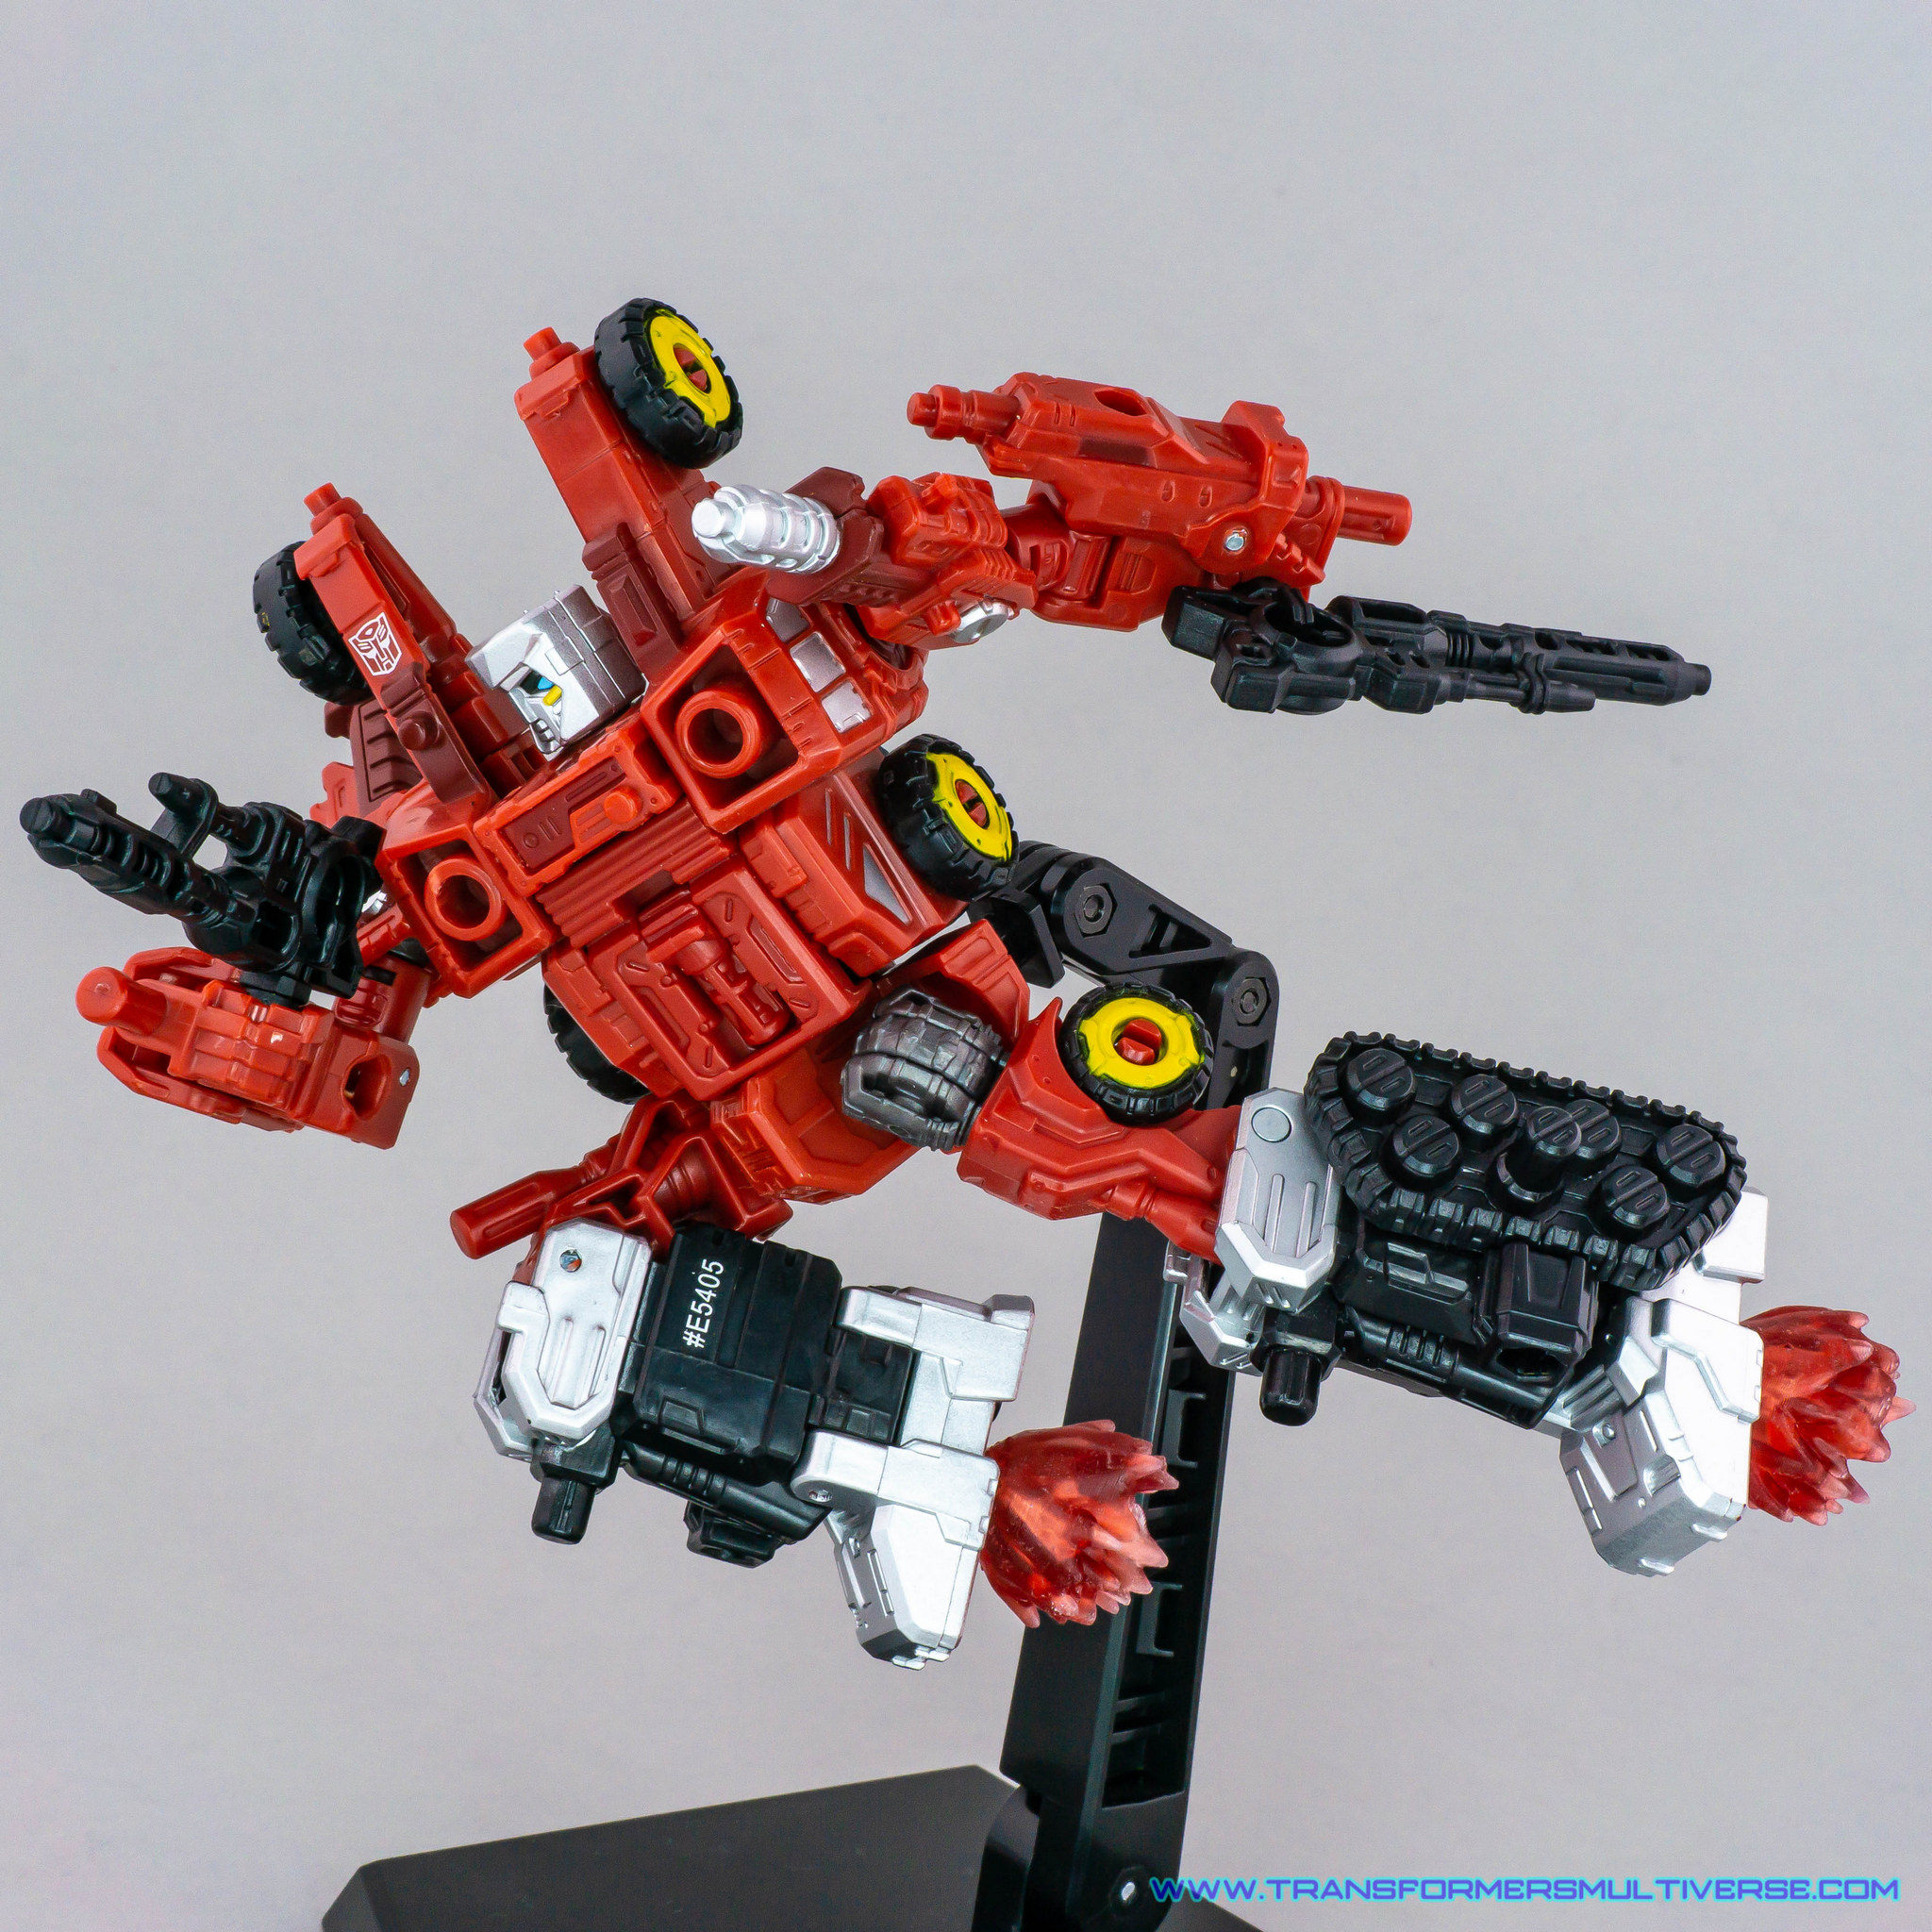 Transformers Siege Aragon dashing in the air